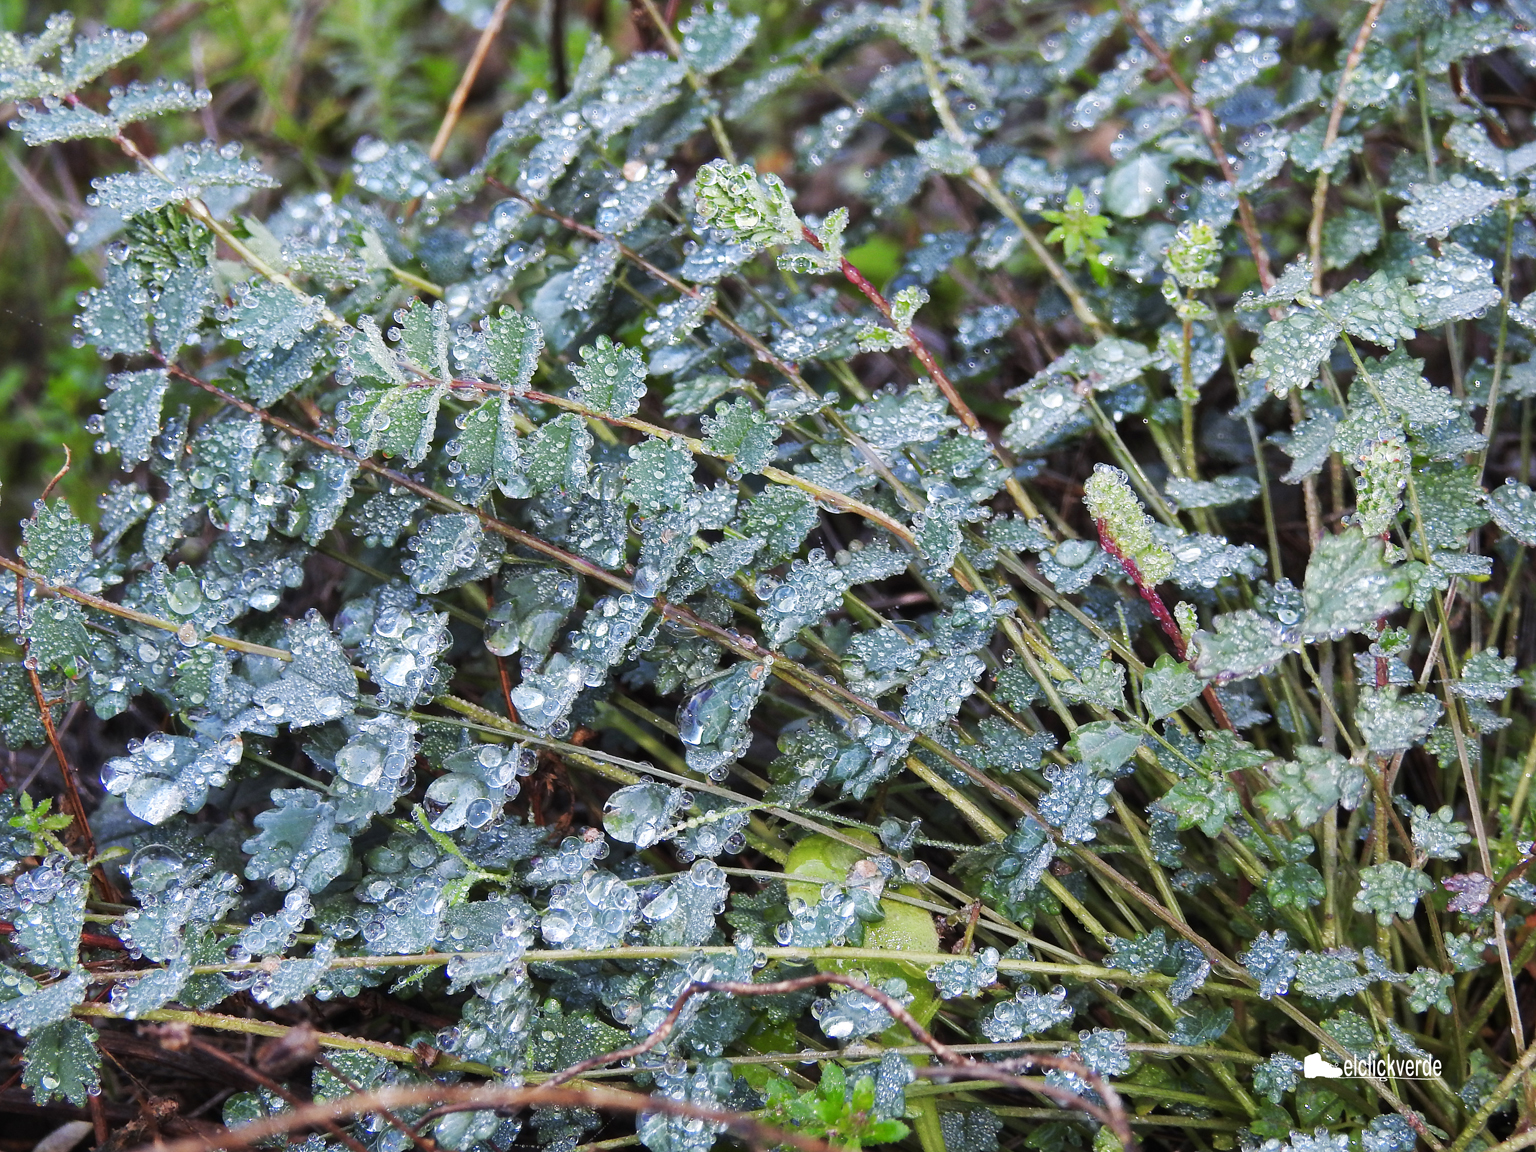 Es magnético mirar las gotas de rocío sobre la vegetación. Imagen: elclickverde